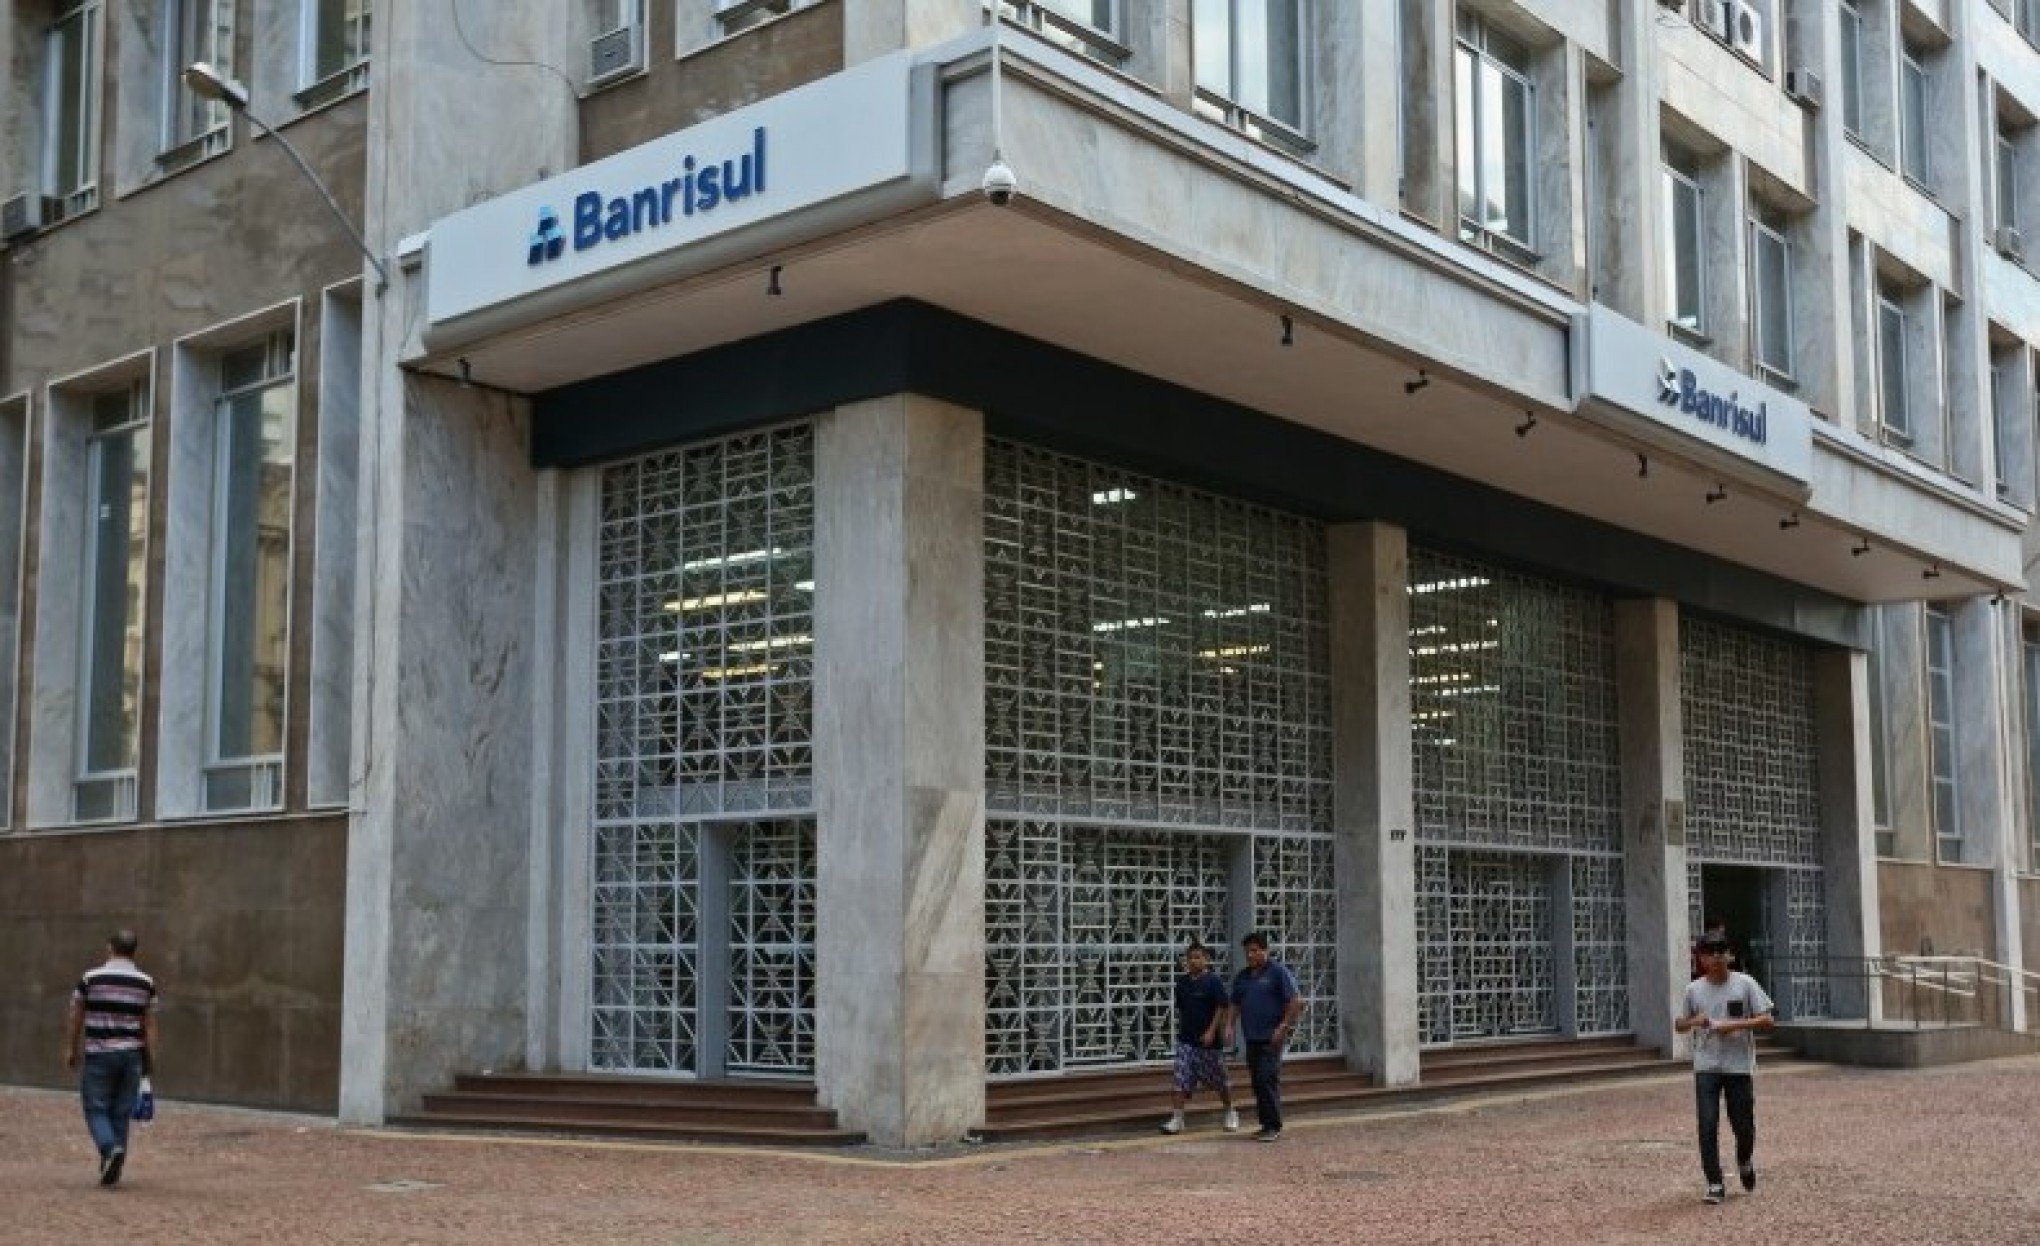 BANRISUL: Saiba quem são os novos integrantes da diretoria do banco gaúcho